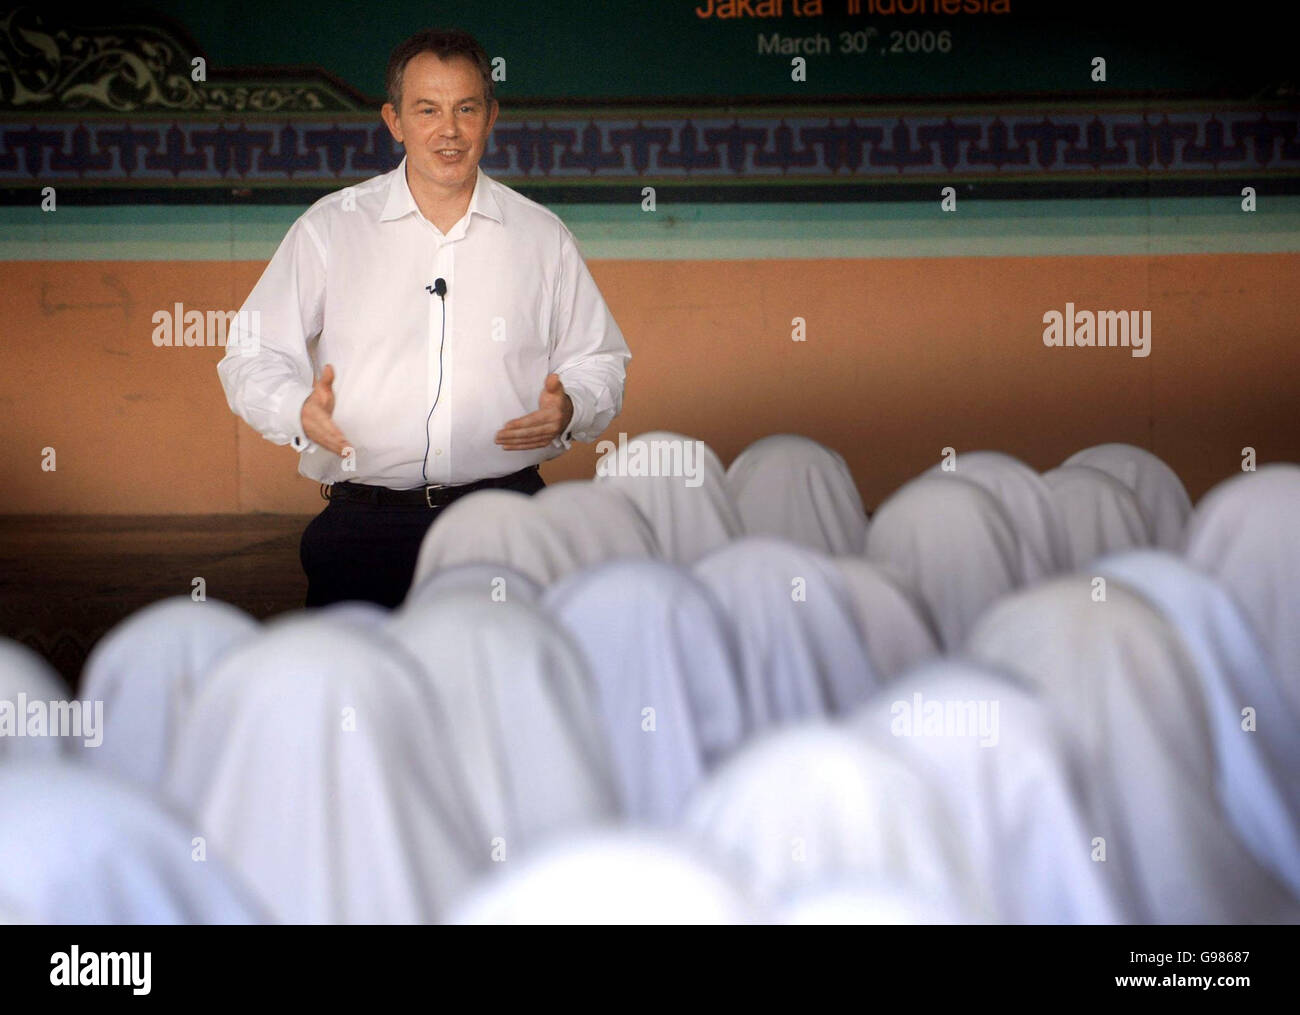 Der britische Premierminister Tony Blair beantwortet die Fragen der Schüler in Pondok Pesantren Darunnajah, einem islamischen Internat in Jakarta, am Donnerstag, den 30. März 2006. Blair hat heute zugesagt, bei der Terrorismusbekämpfung enger mit dem größten muslimischen Land der Welt zusammenzuarbeiten, aber die muslimischen Führer Indonesiens sagten ihm, dass seine Politik Extremismus besäte. Herr Blair, begleitet von seiner Frau Cherie, ist gestern Abend in der Hauptstadt Jakarta auf der letzten Etappe einer siebentägigen diplomatischen Marathonmission niedergegangen. Siehe PA Geschichte POLITIK Blair. DRÜCKEN Sie VERBANDSFOTO. Bildnachweis sollte lauten: Stefan Rousseau/PA. Stockfoto